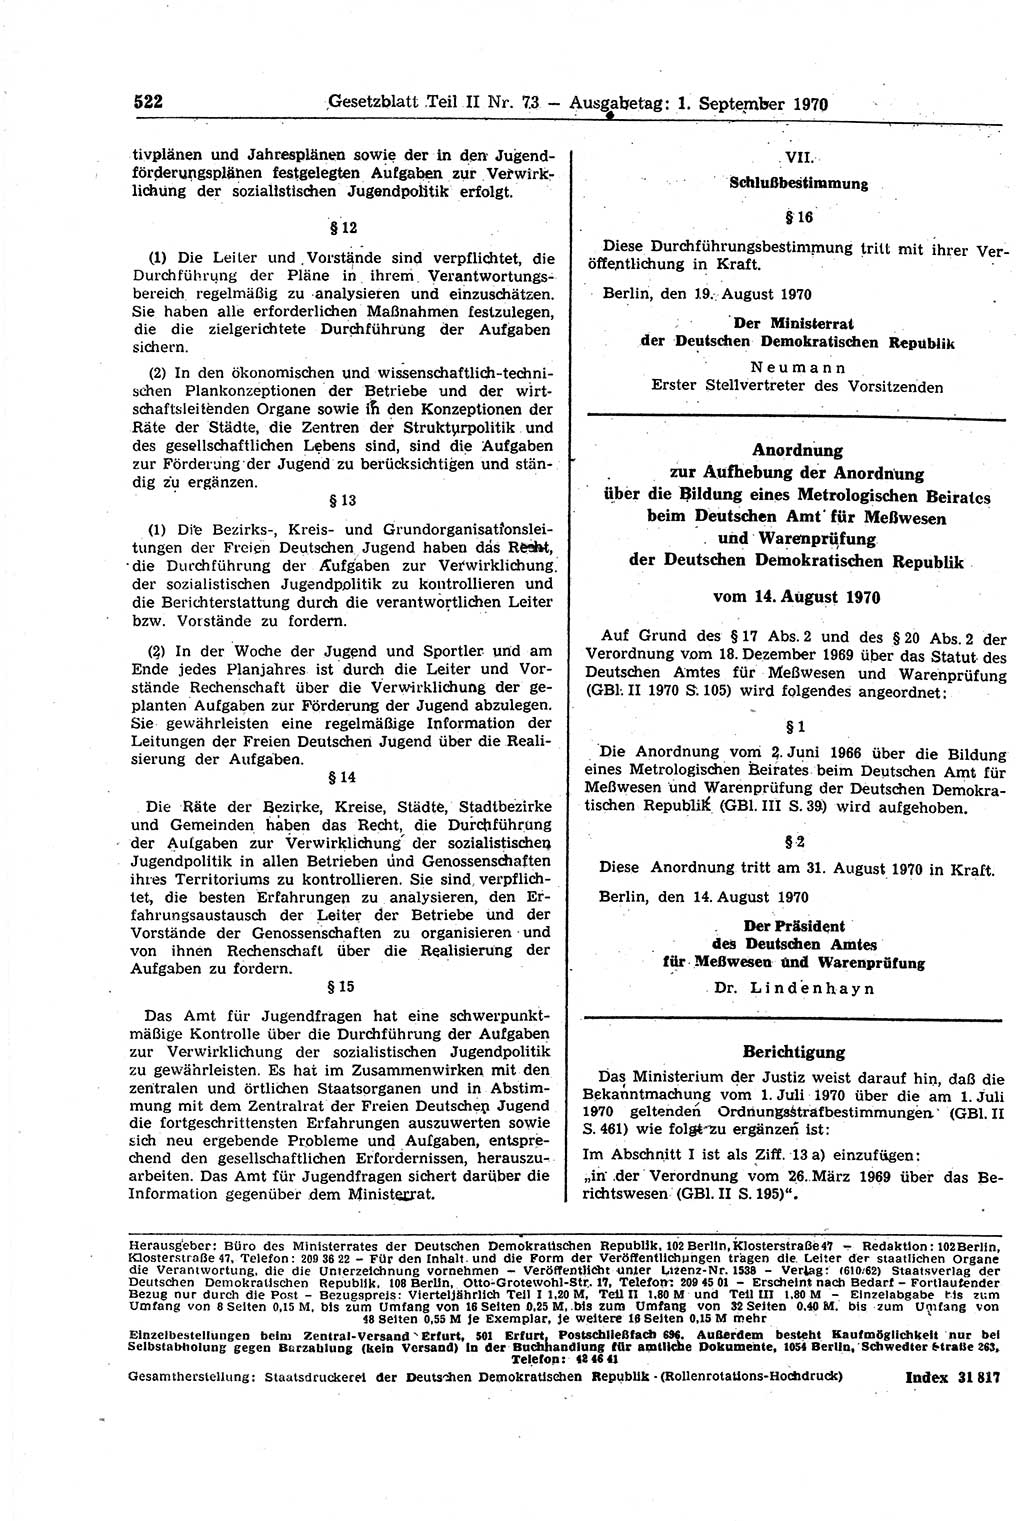 Gesetzblatt (GBl.) der Deutschen Demokratischen Republik (DDR) Teil ⅠⅠ 1970, Seite 522 (GBl. DDR ⅠⅠ 1970, S. 522)